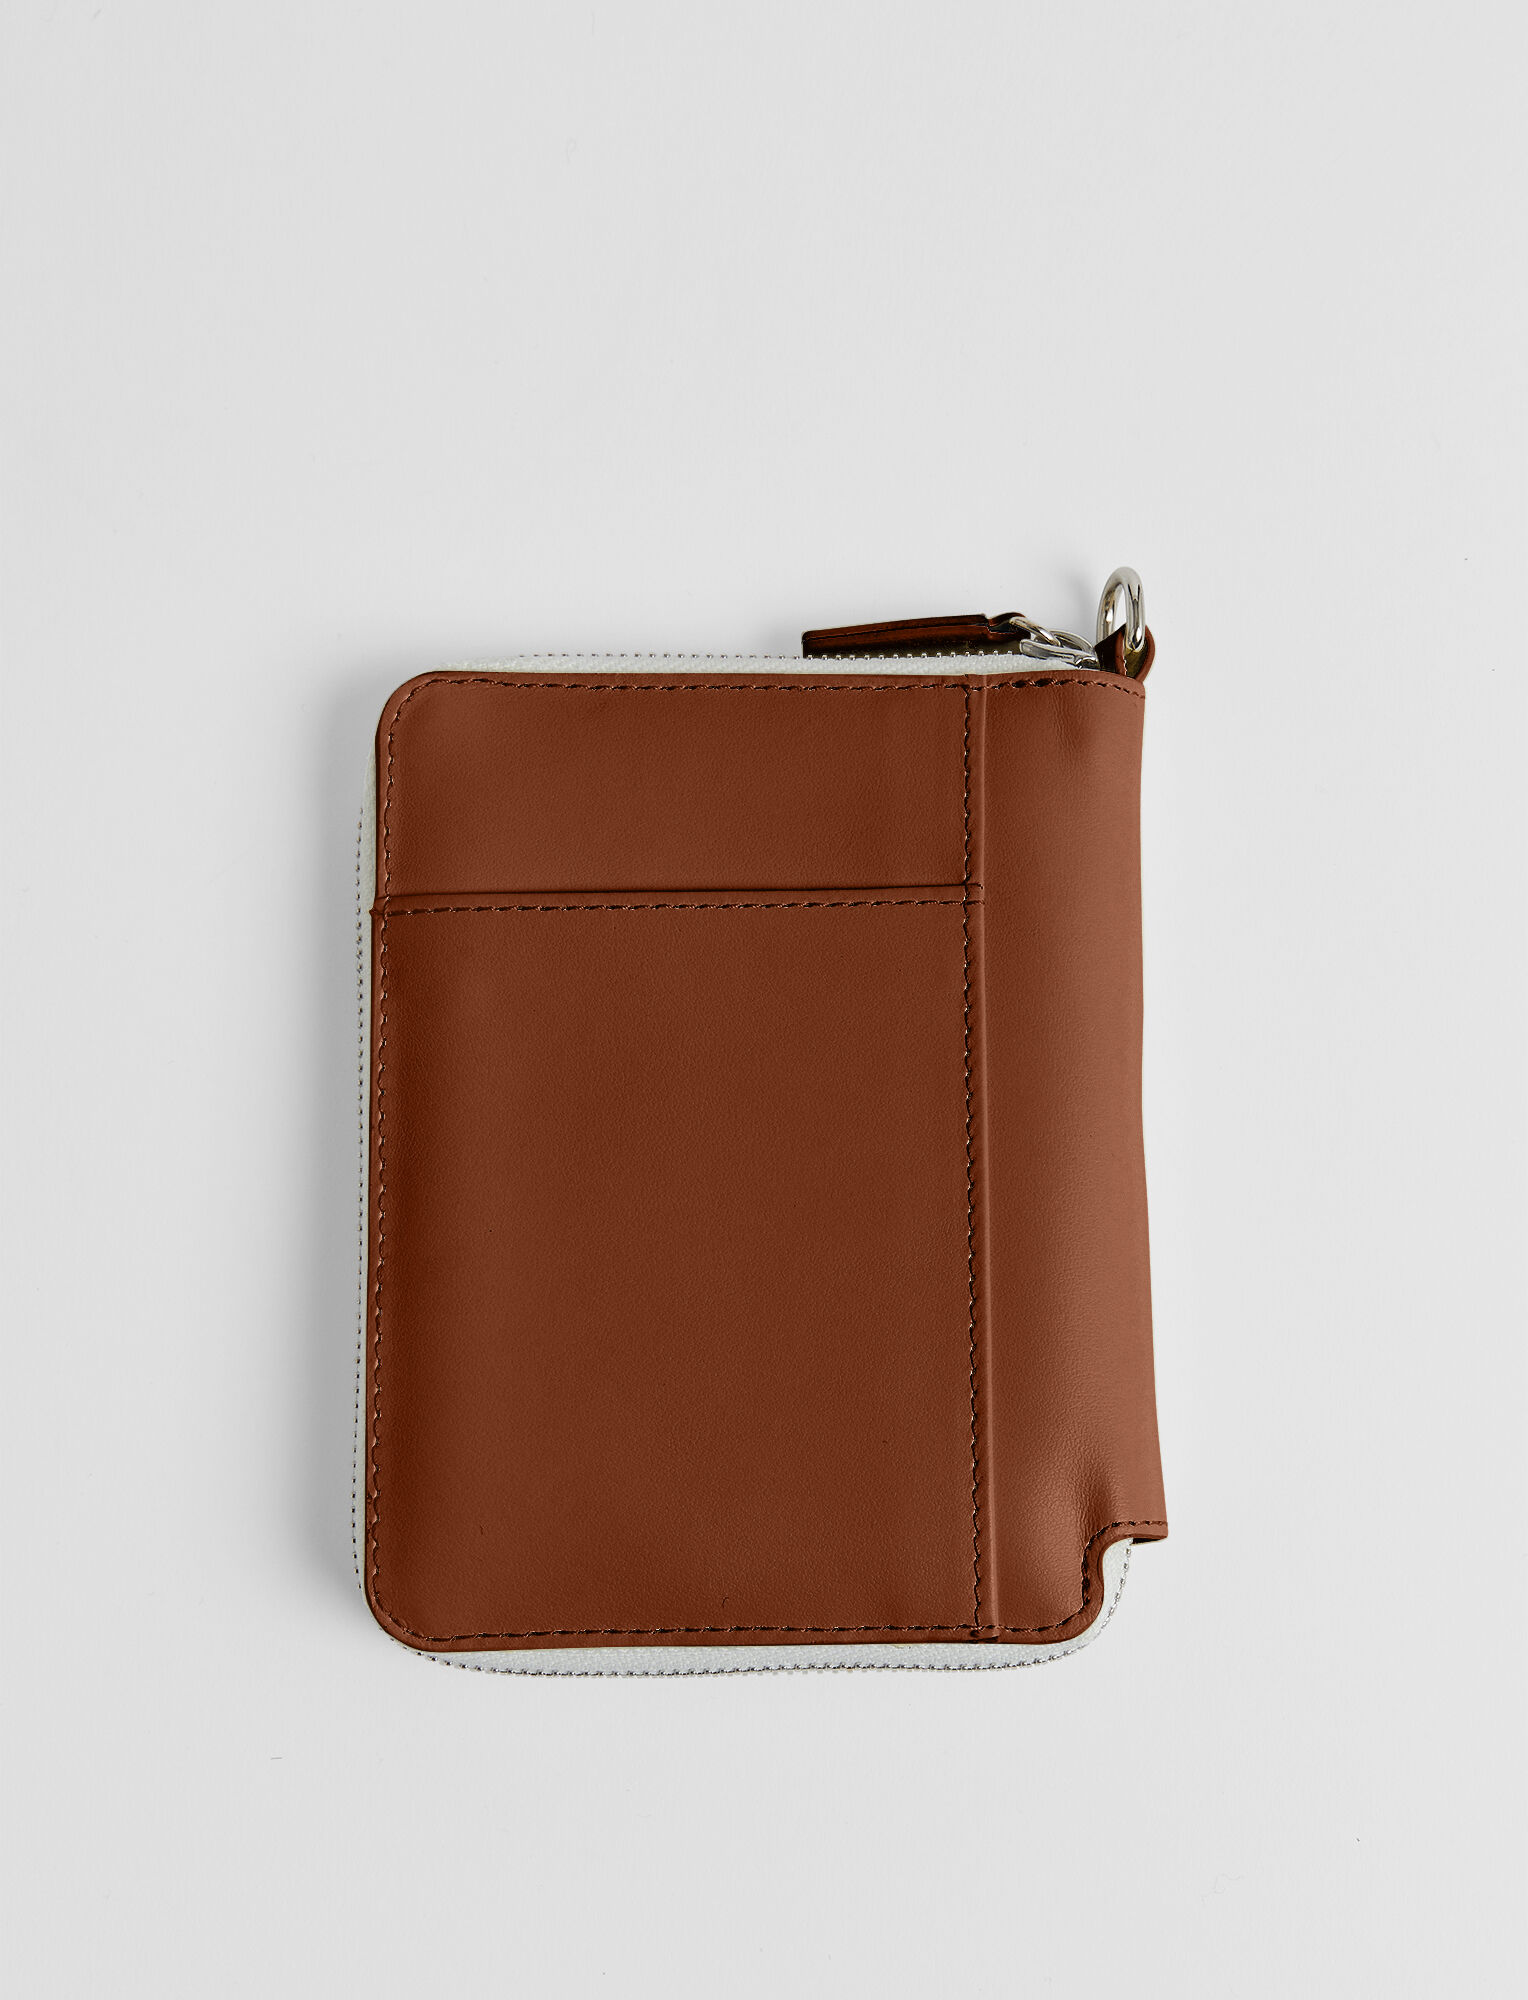 Joseph, Leather Strap Zip Wallet, in Copper